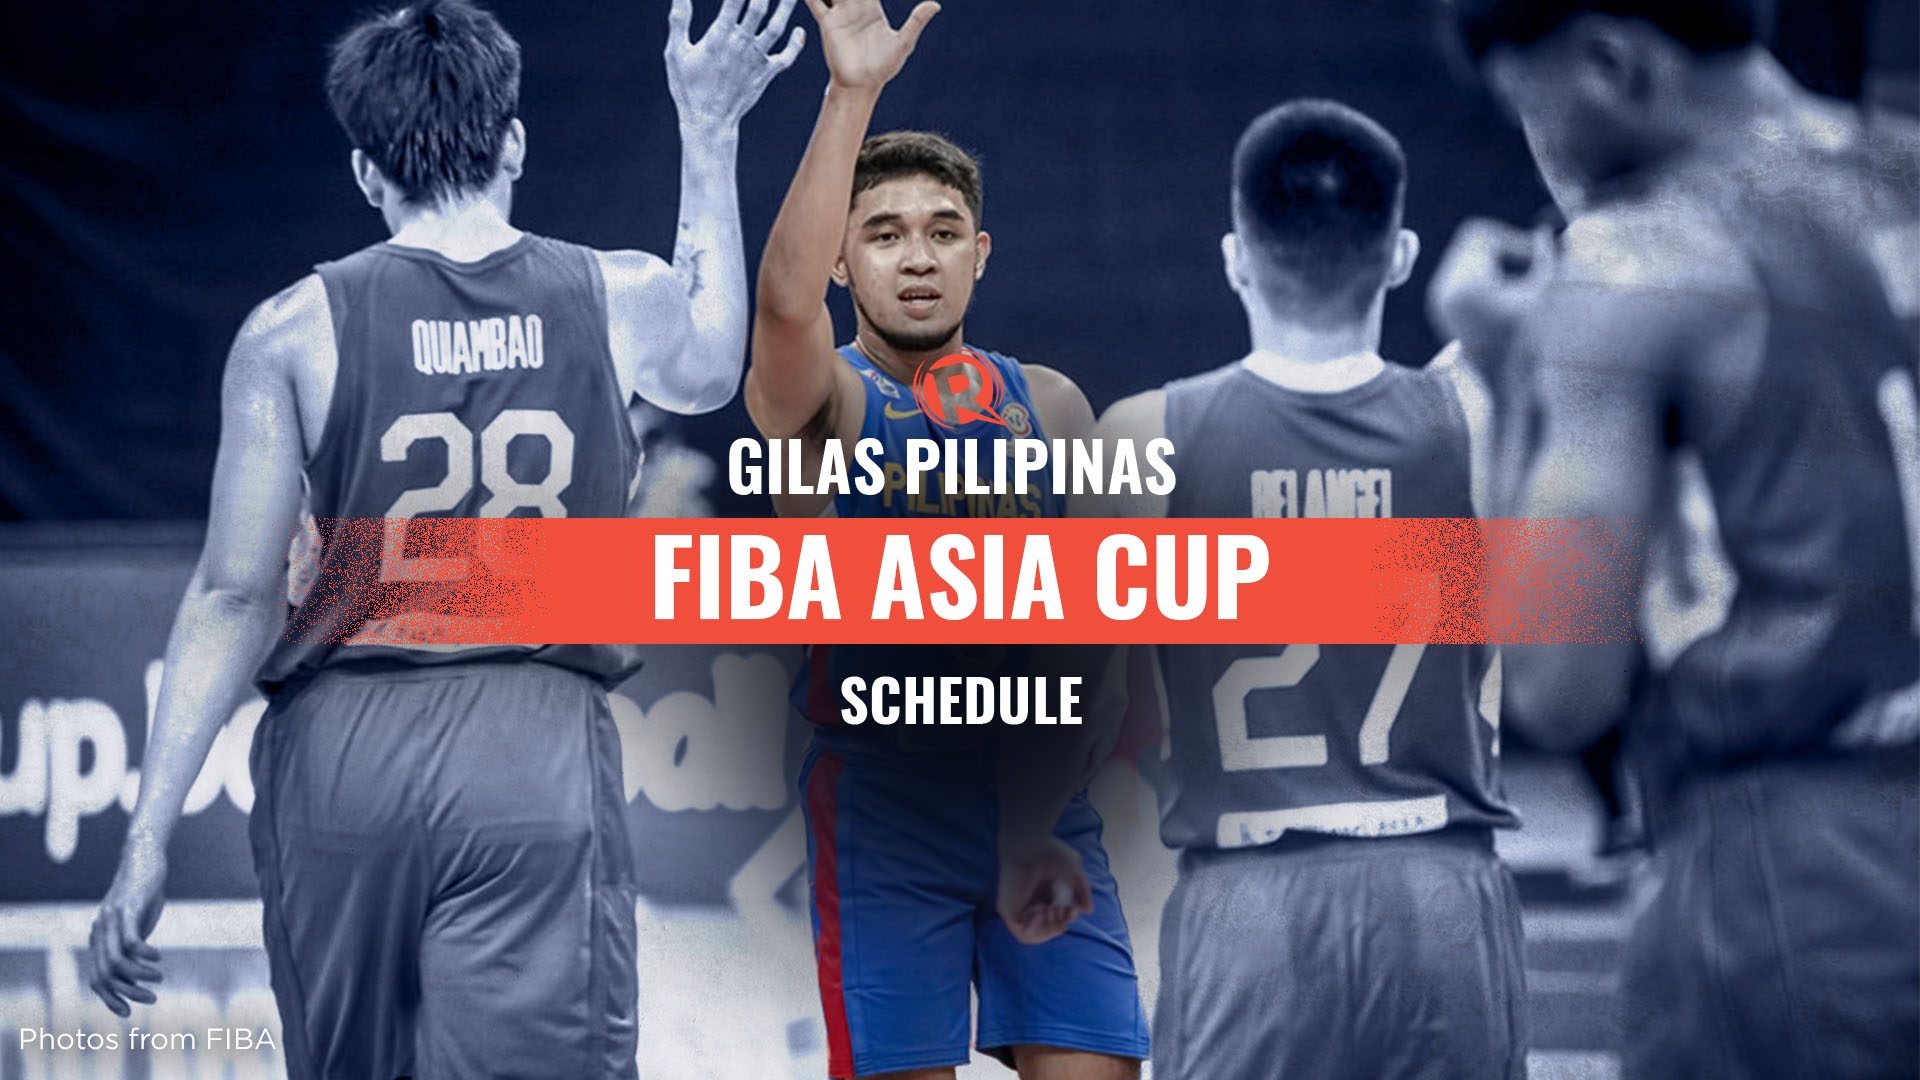 SCHEDULE: Gilas Pilipinas at FIBA Asia Cup